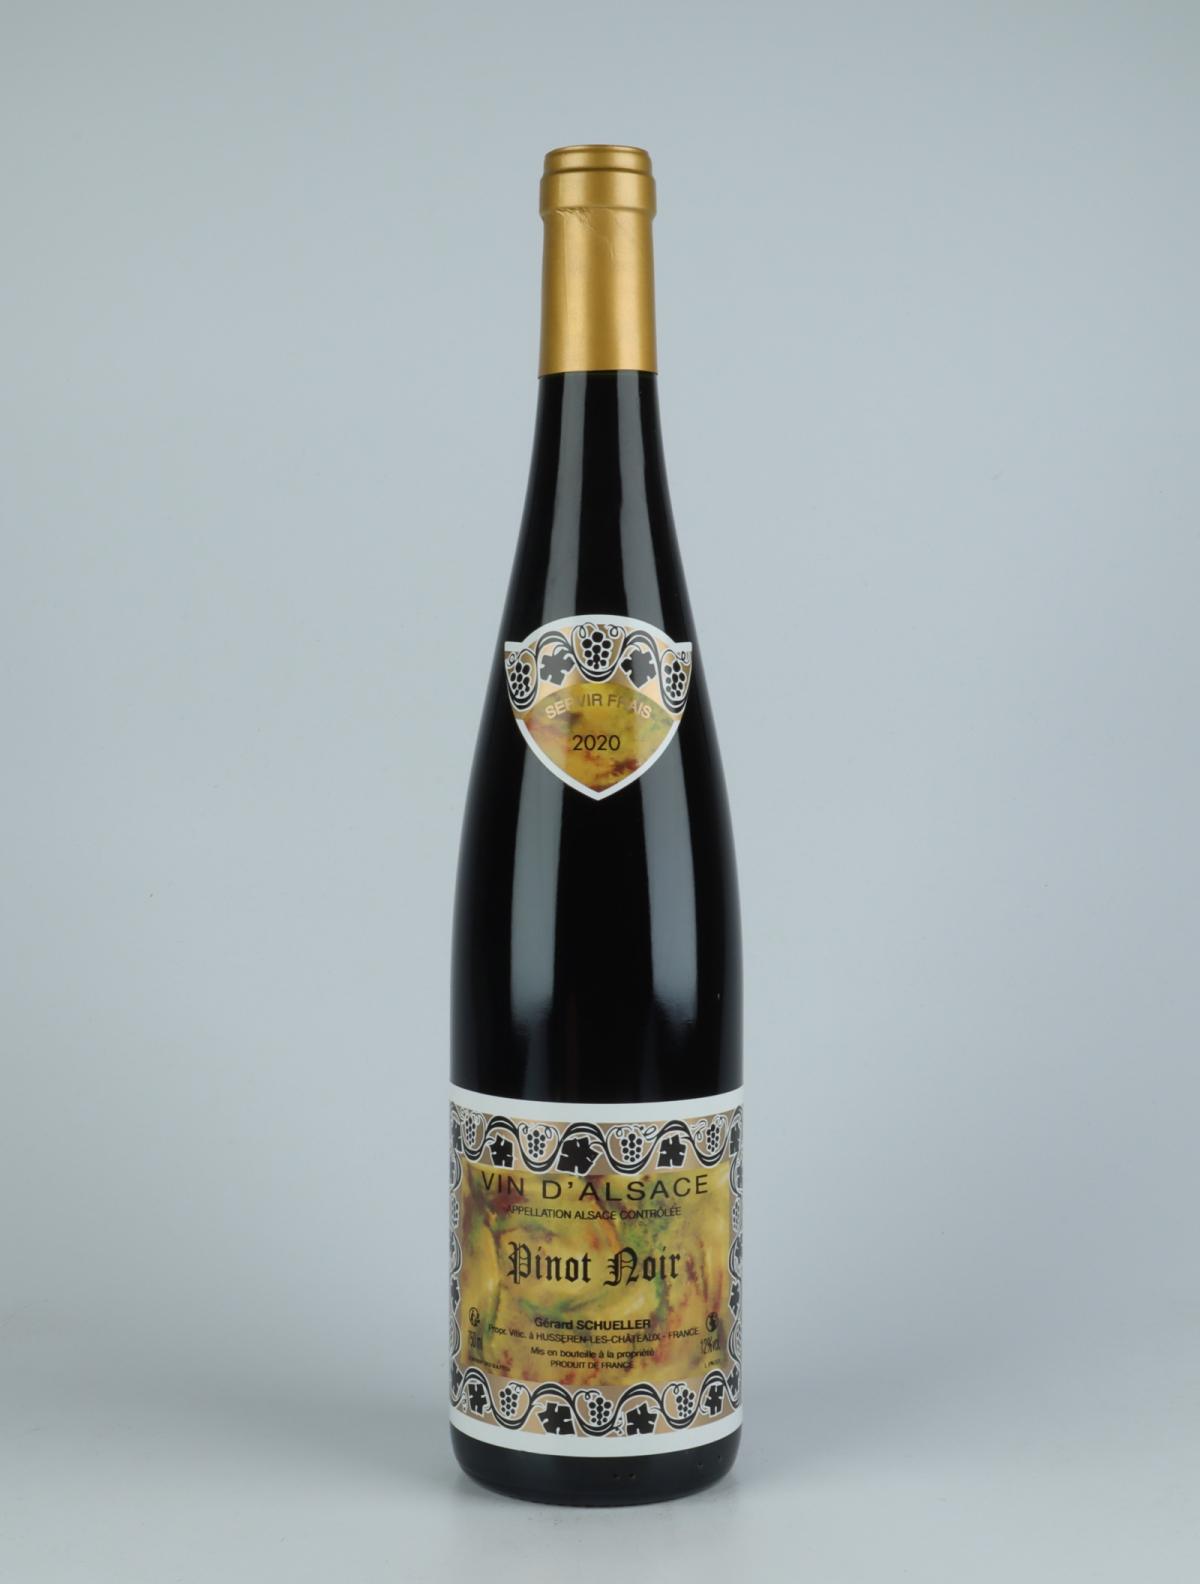 A bottle 2020 Pinot Noir Red wine from Gérard Schueller, Alsace in France